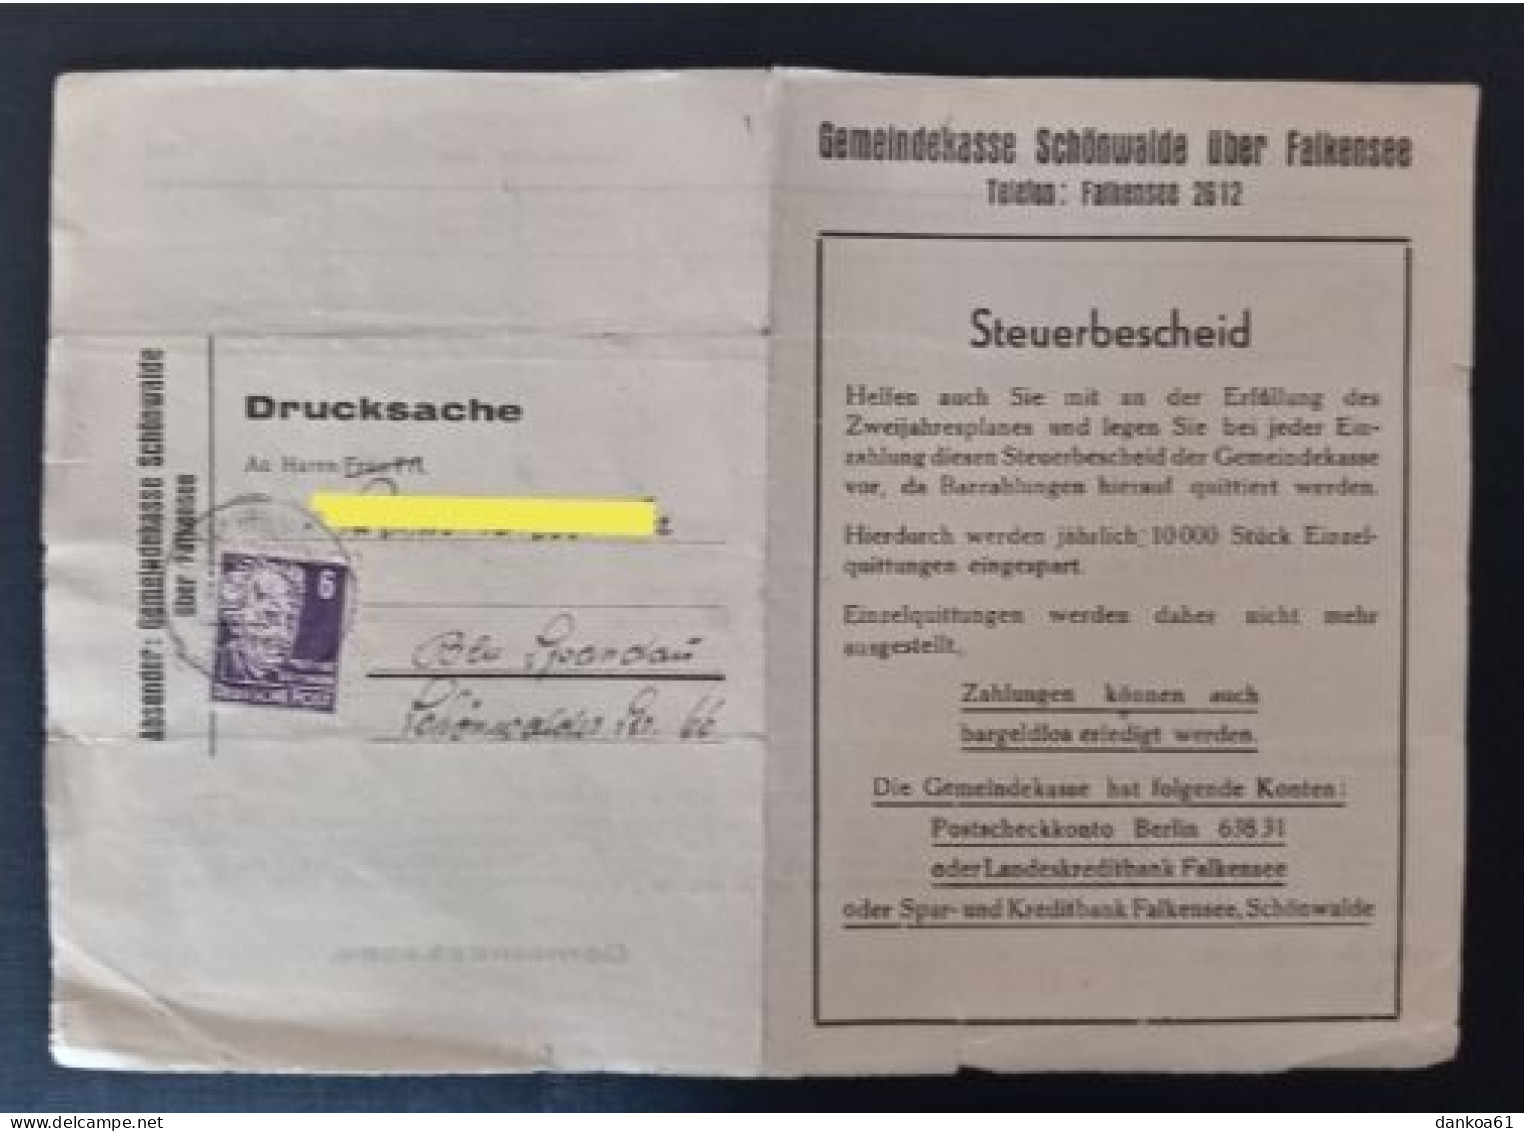 SBZ Gemeindekasse Schönwalde über Falkensee Nach Berlin Spandau 17.6.49. - Covers & Documents